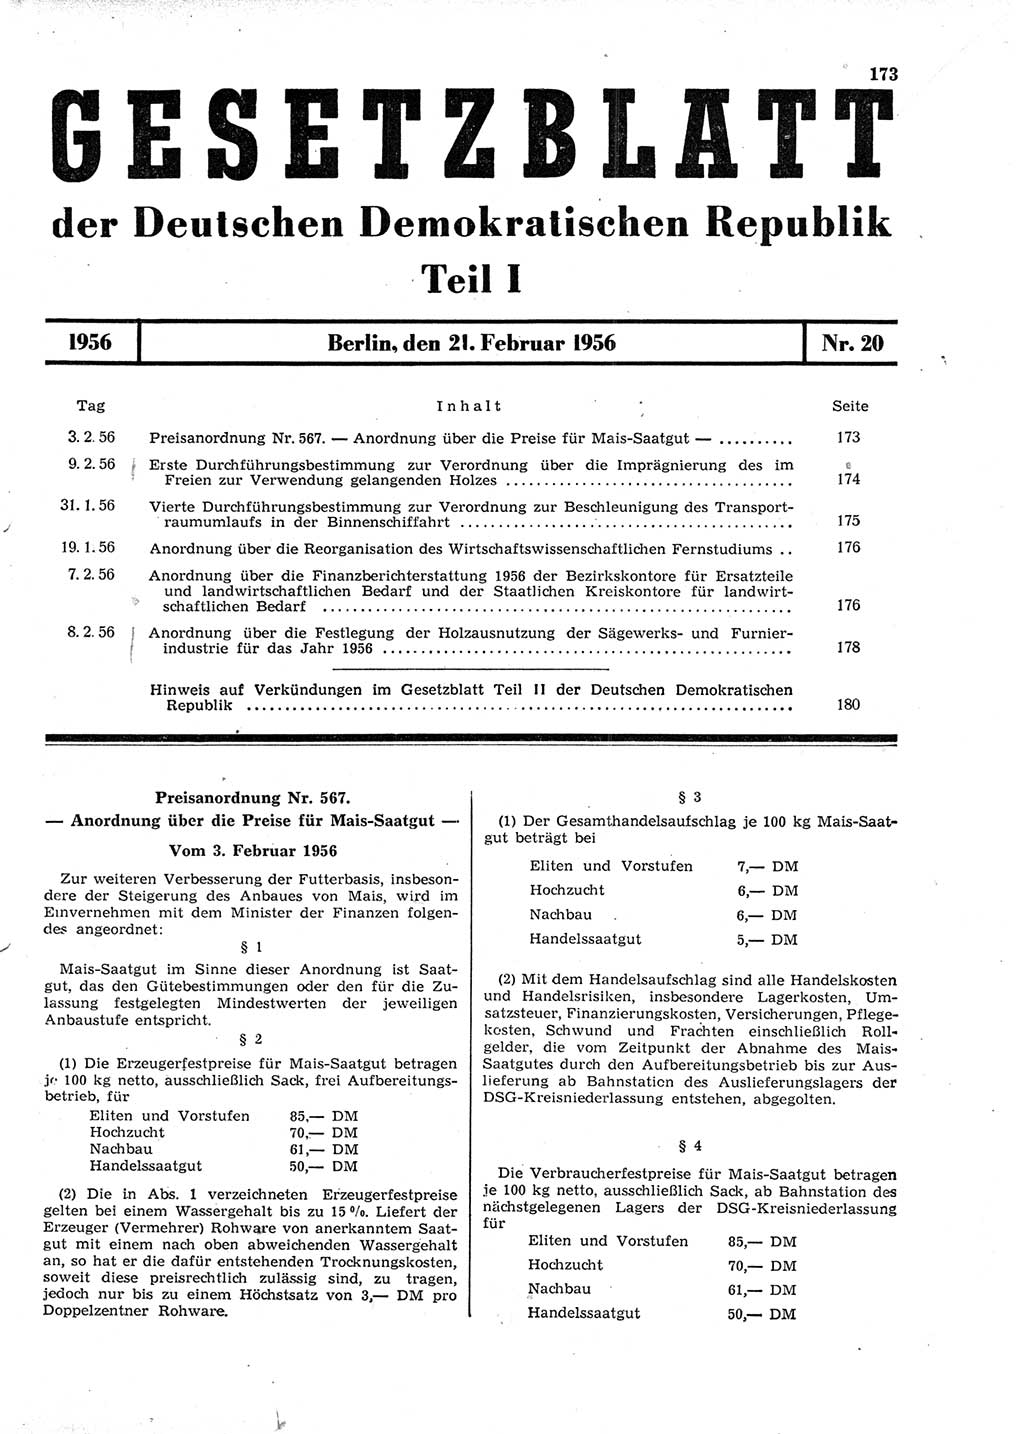 Gesetzblatt (GBl.) der Deutschen Demokratischen Republik (DDR) Teil Ⅰ 1956, Seite 173 (GBl. DDR Ⅰ 1956, S. 173)